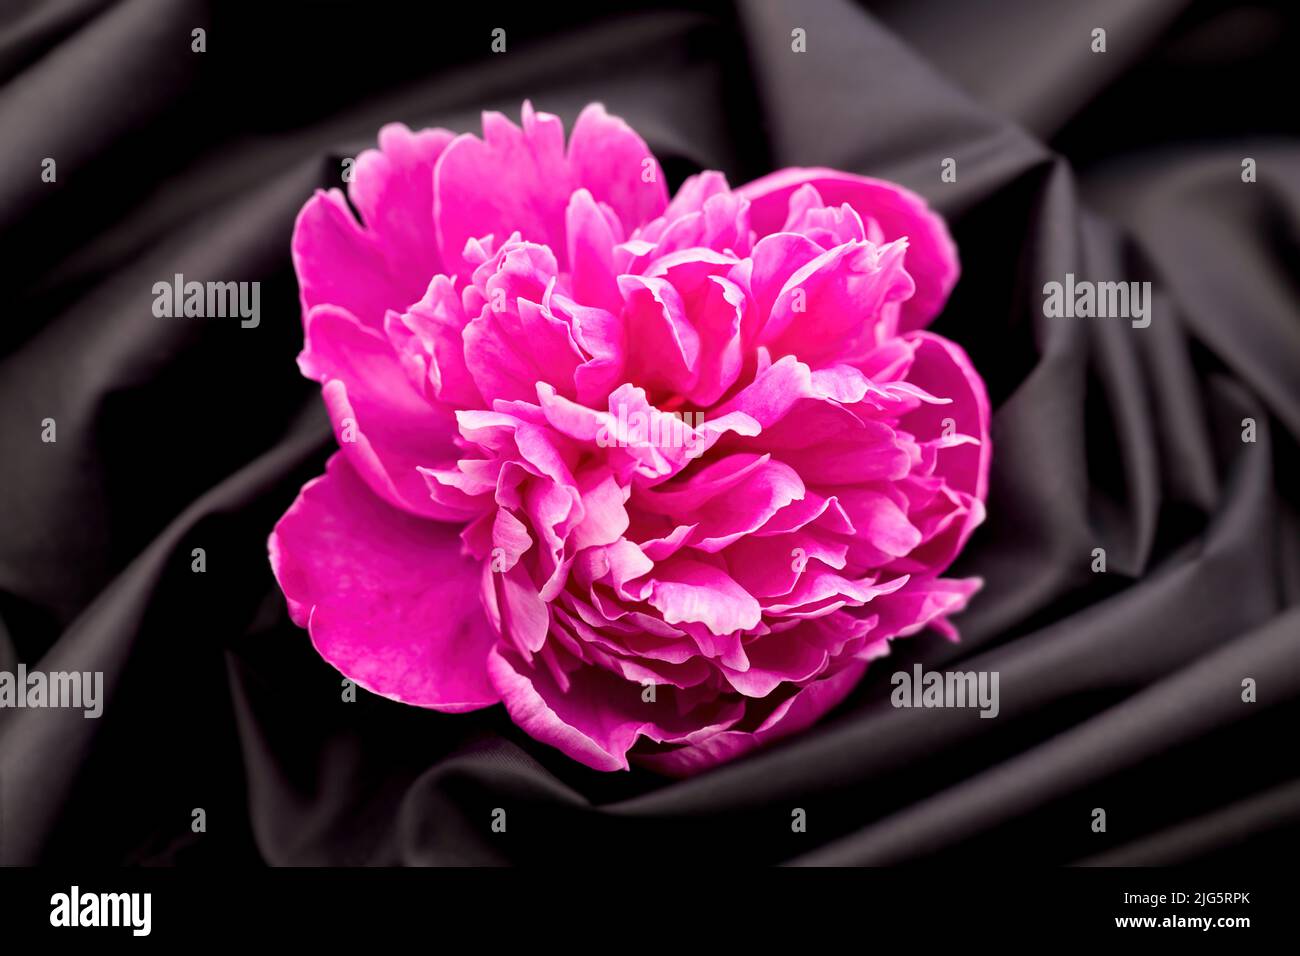 Un pivoine rose est placé sur un tissu noir tourbillonnant dans cette photo de studio. Banque D'Images